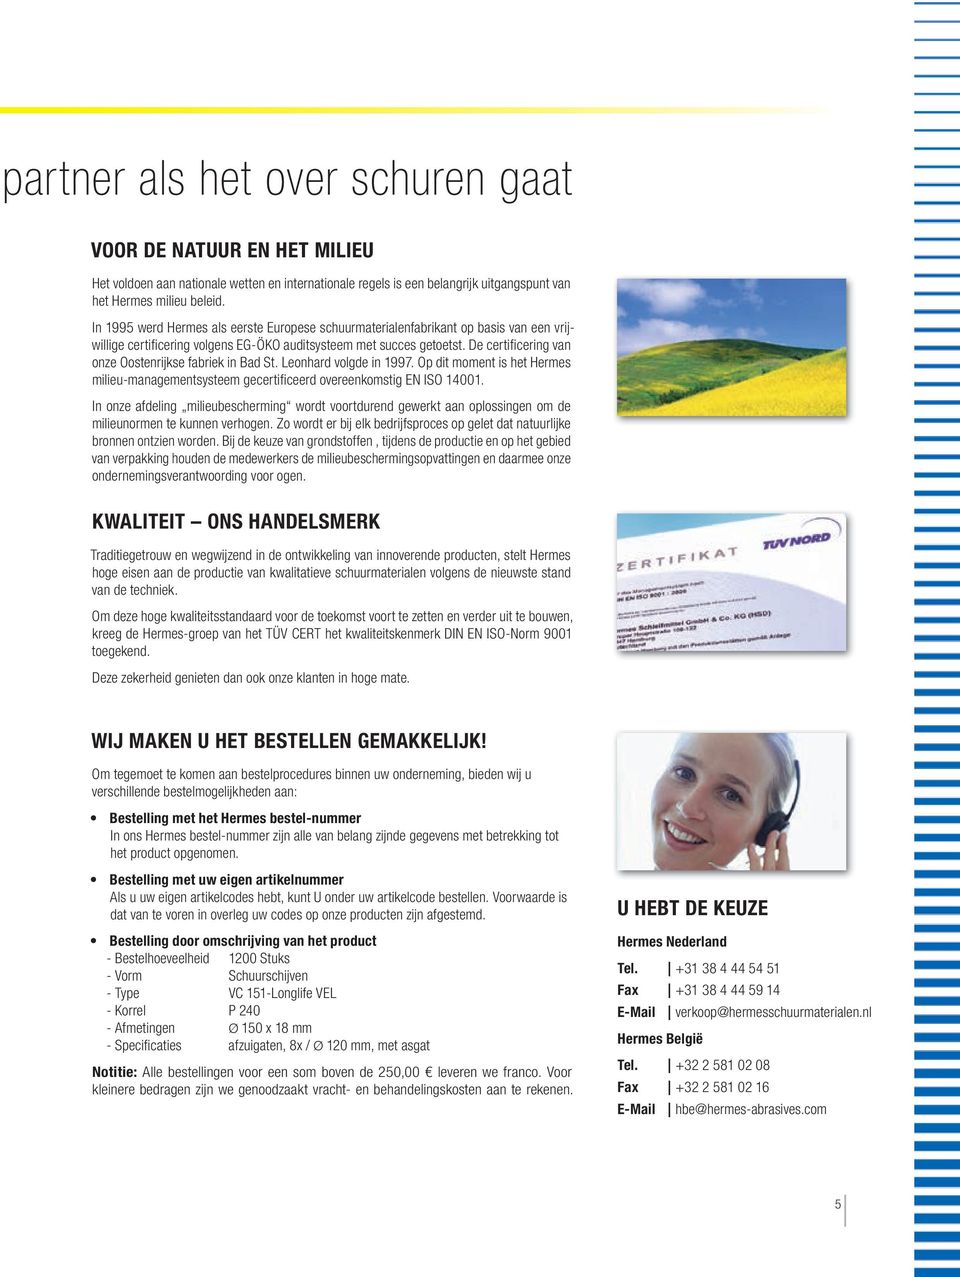 De certifi cering van onze Oostenrijkse fabriek in Bad St. Leonhard volgde in 1997. Op dit moment is het Hermes milieu-managementsysteem gecertifi ceerd overeenkomstig EN ISO 14001.